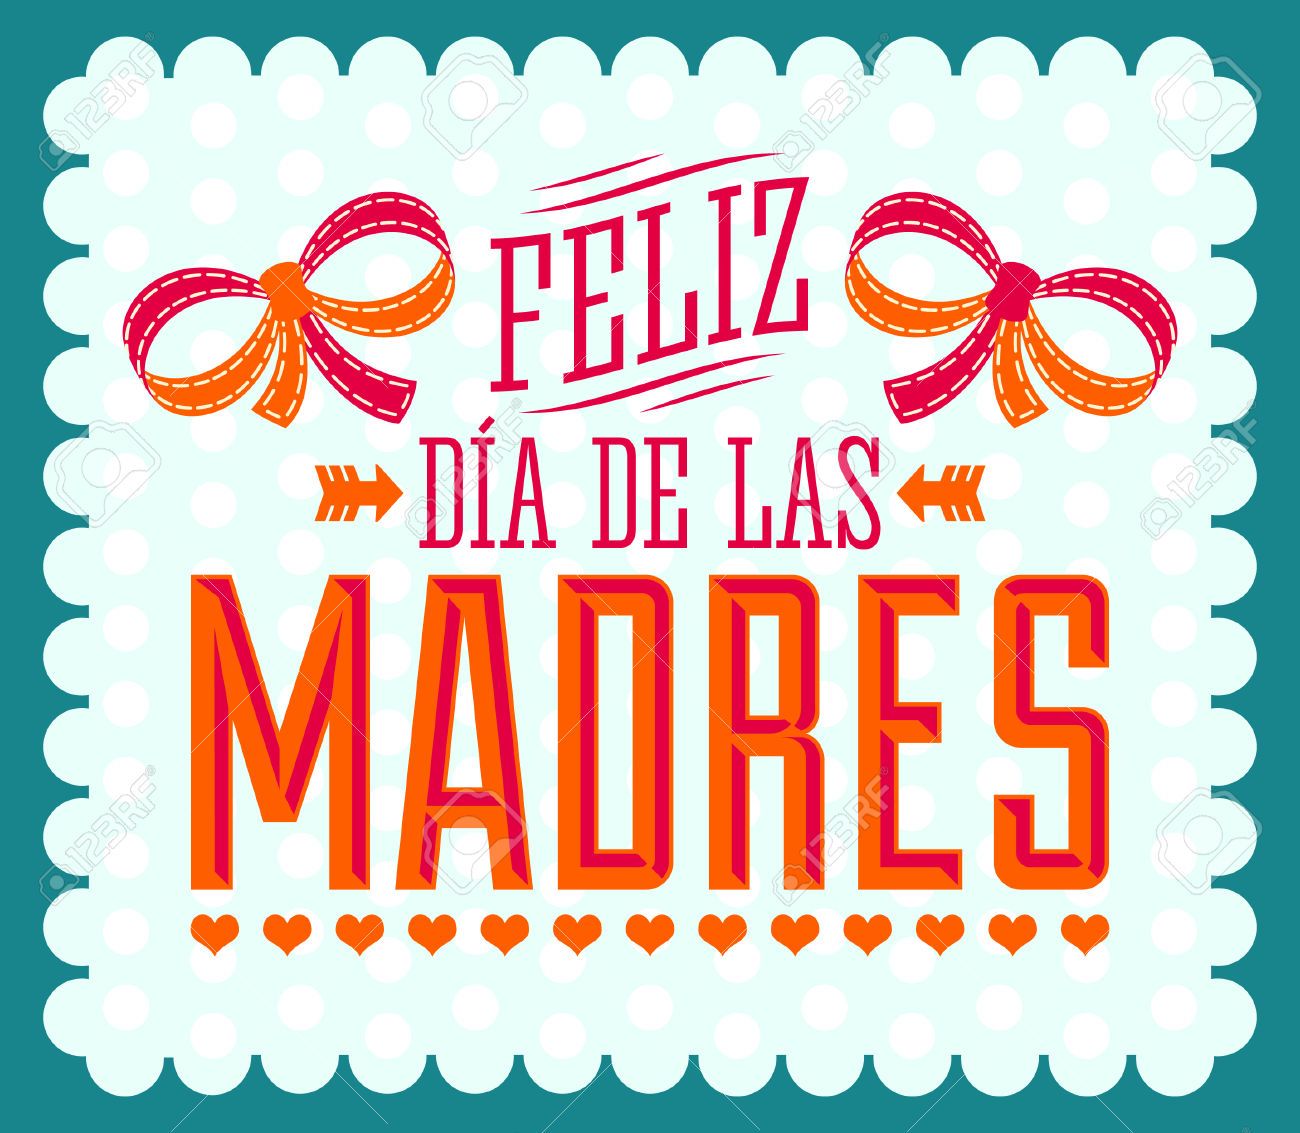 Feliz Dia de las Madres, Happy Mother s Day spanish text. Happy mother s day, Feliz, Happy mothers day